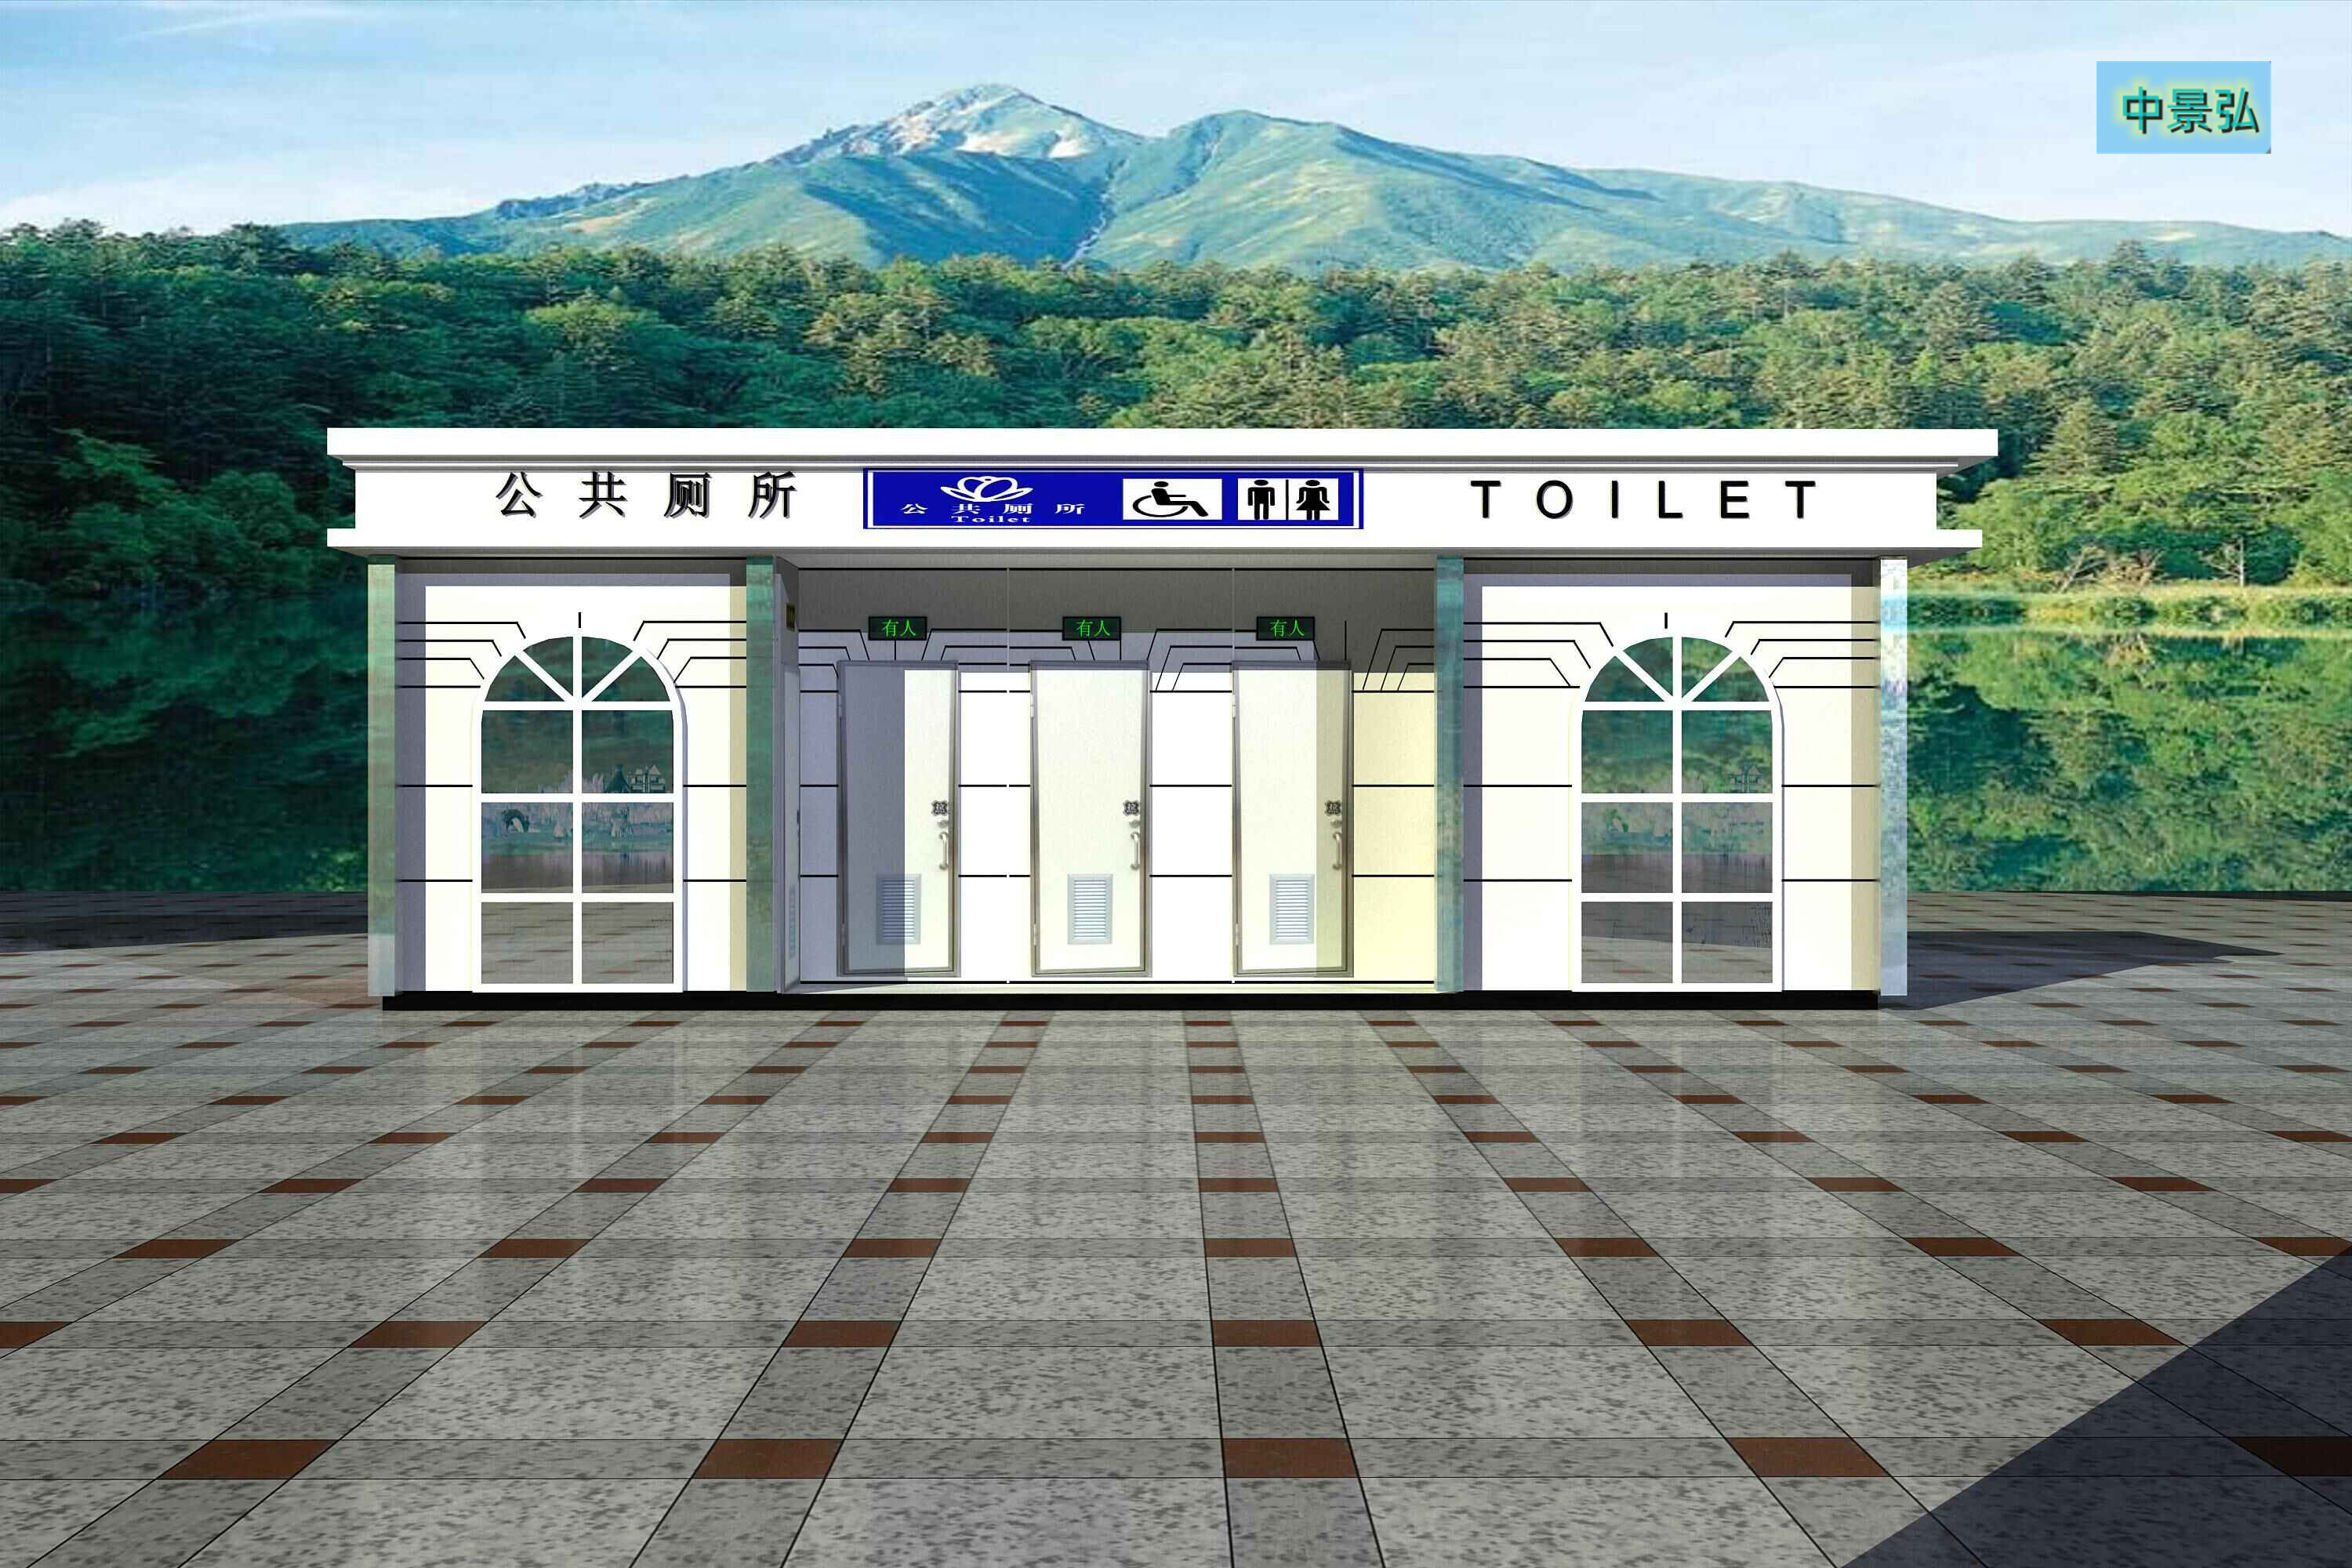 江西吉安供应景区移动厕所工地移动简易厕所、可随意调整、